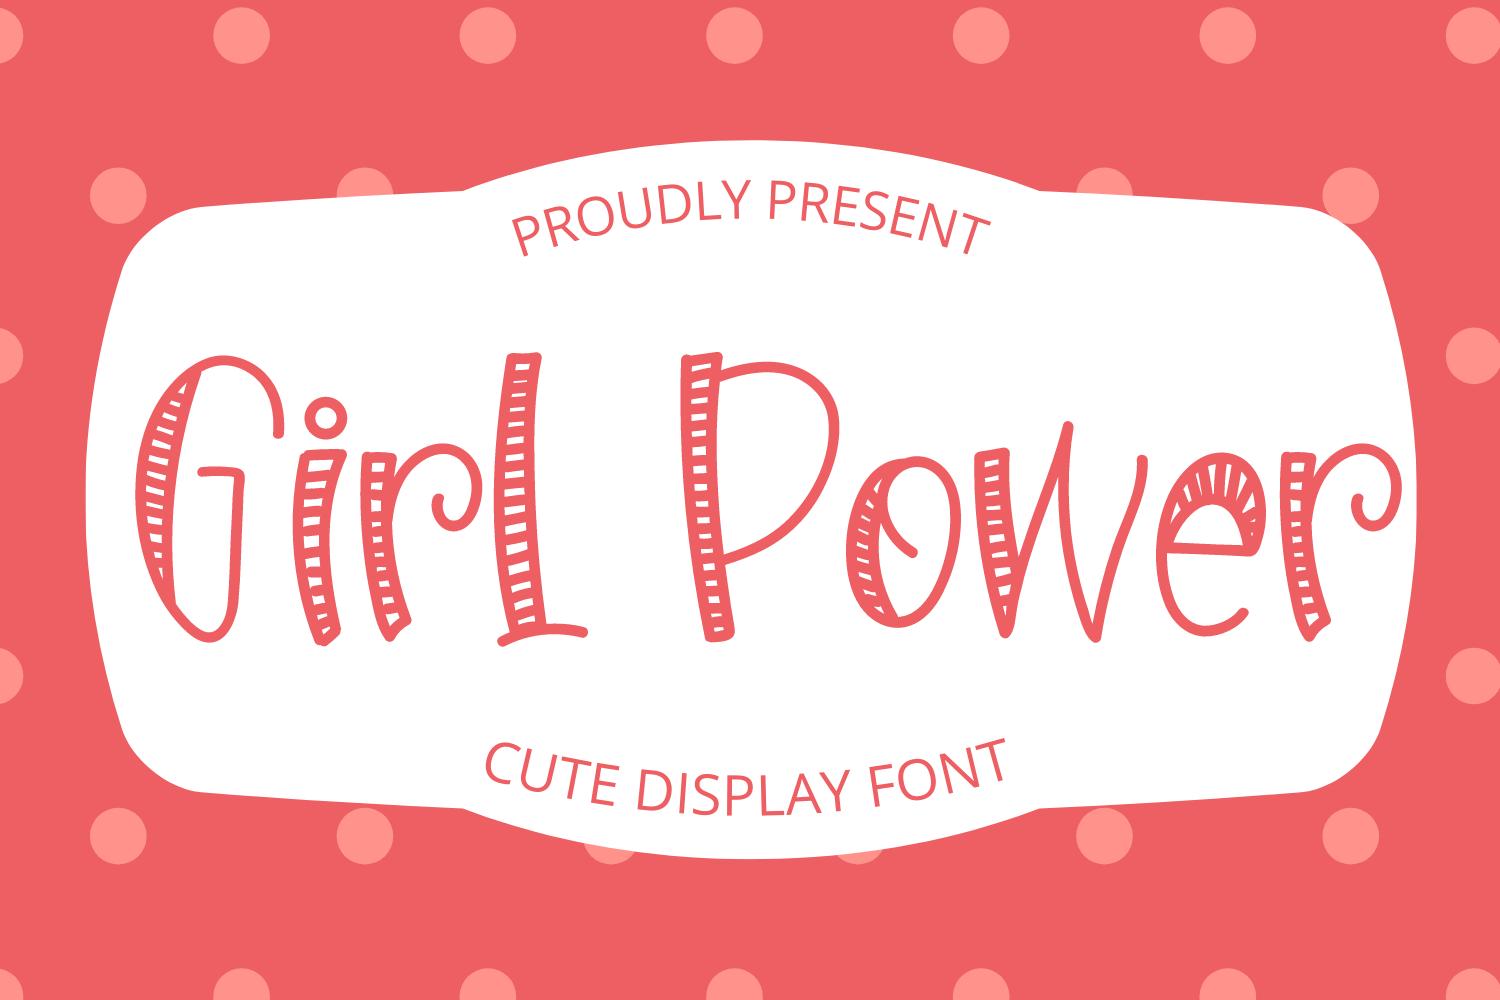 Girl Power Font